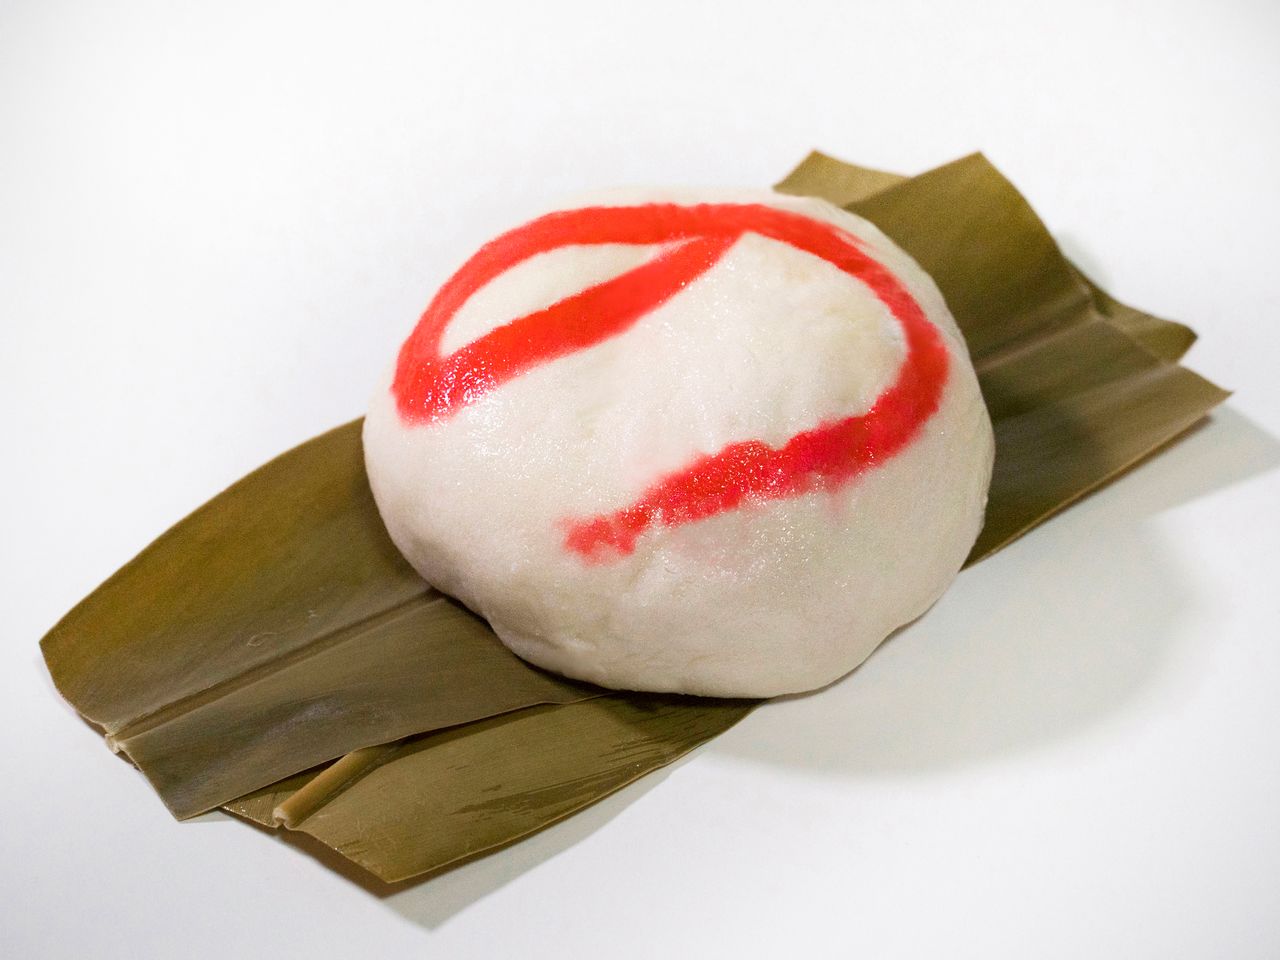 甘さ控えめな餡（あん）が入った「のまんじゅう」。沖縄では「サンニン」と呼ばれる月桃（げっとう）の葉で包んで蒸す